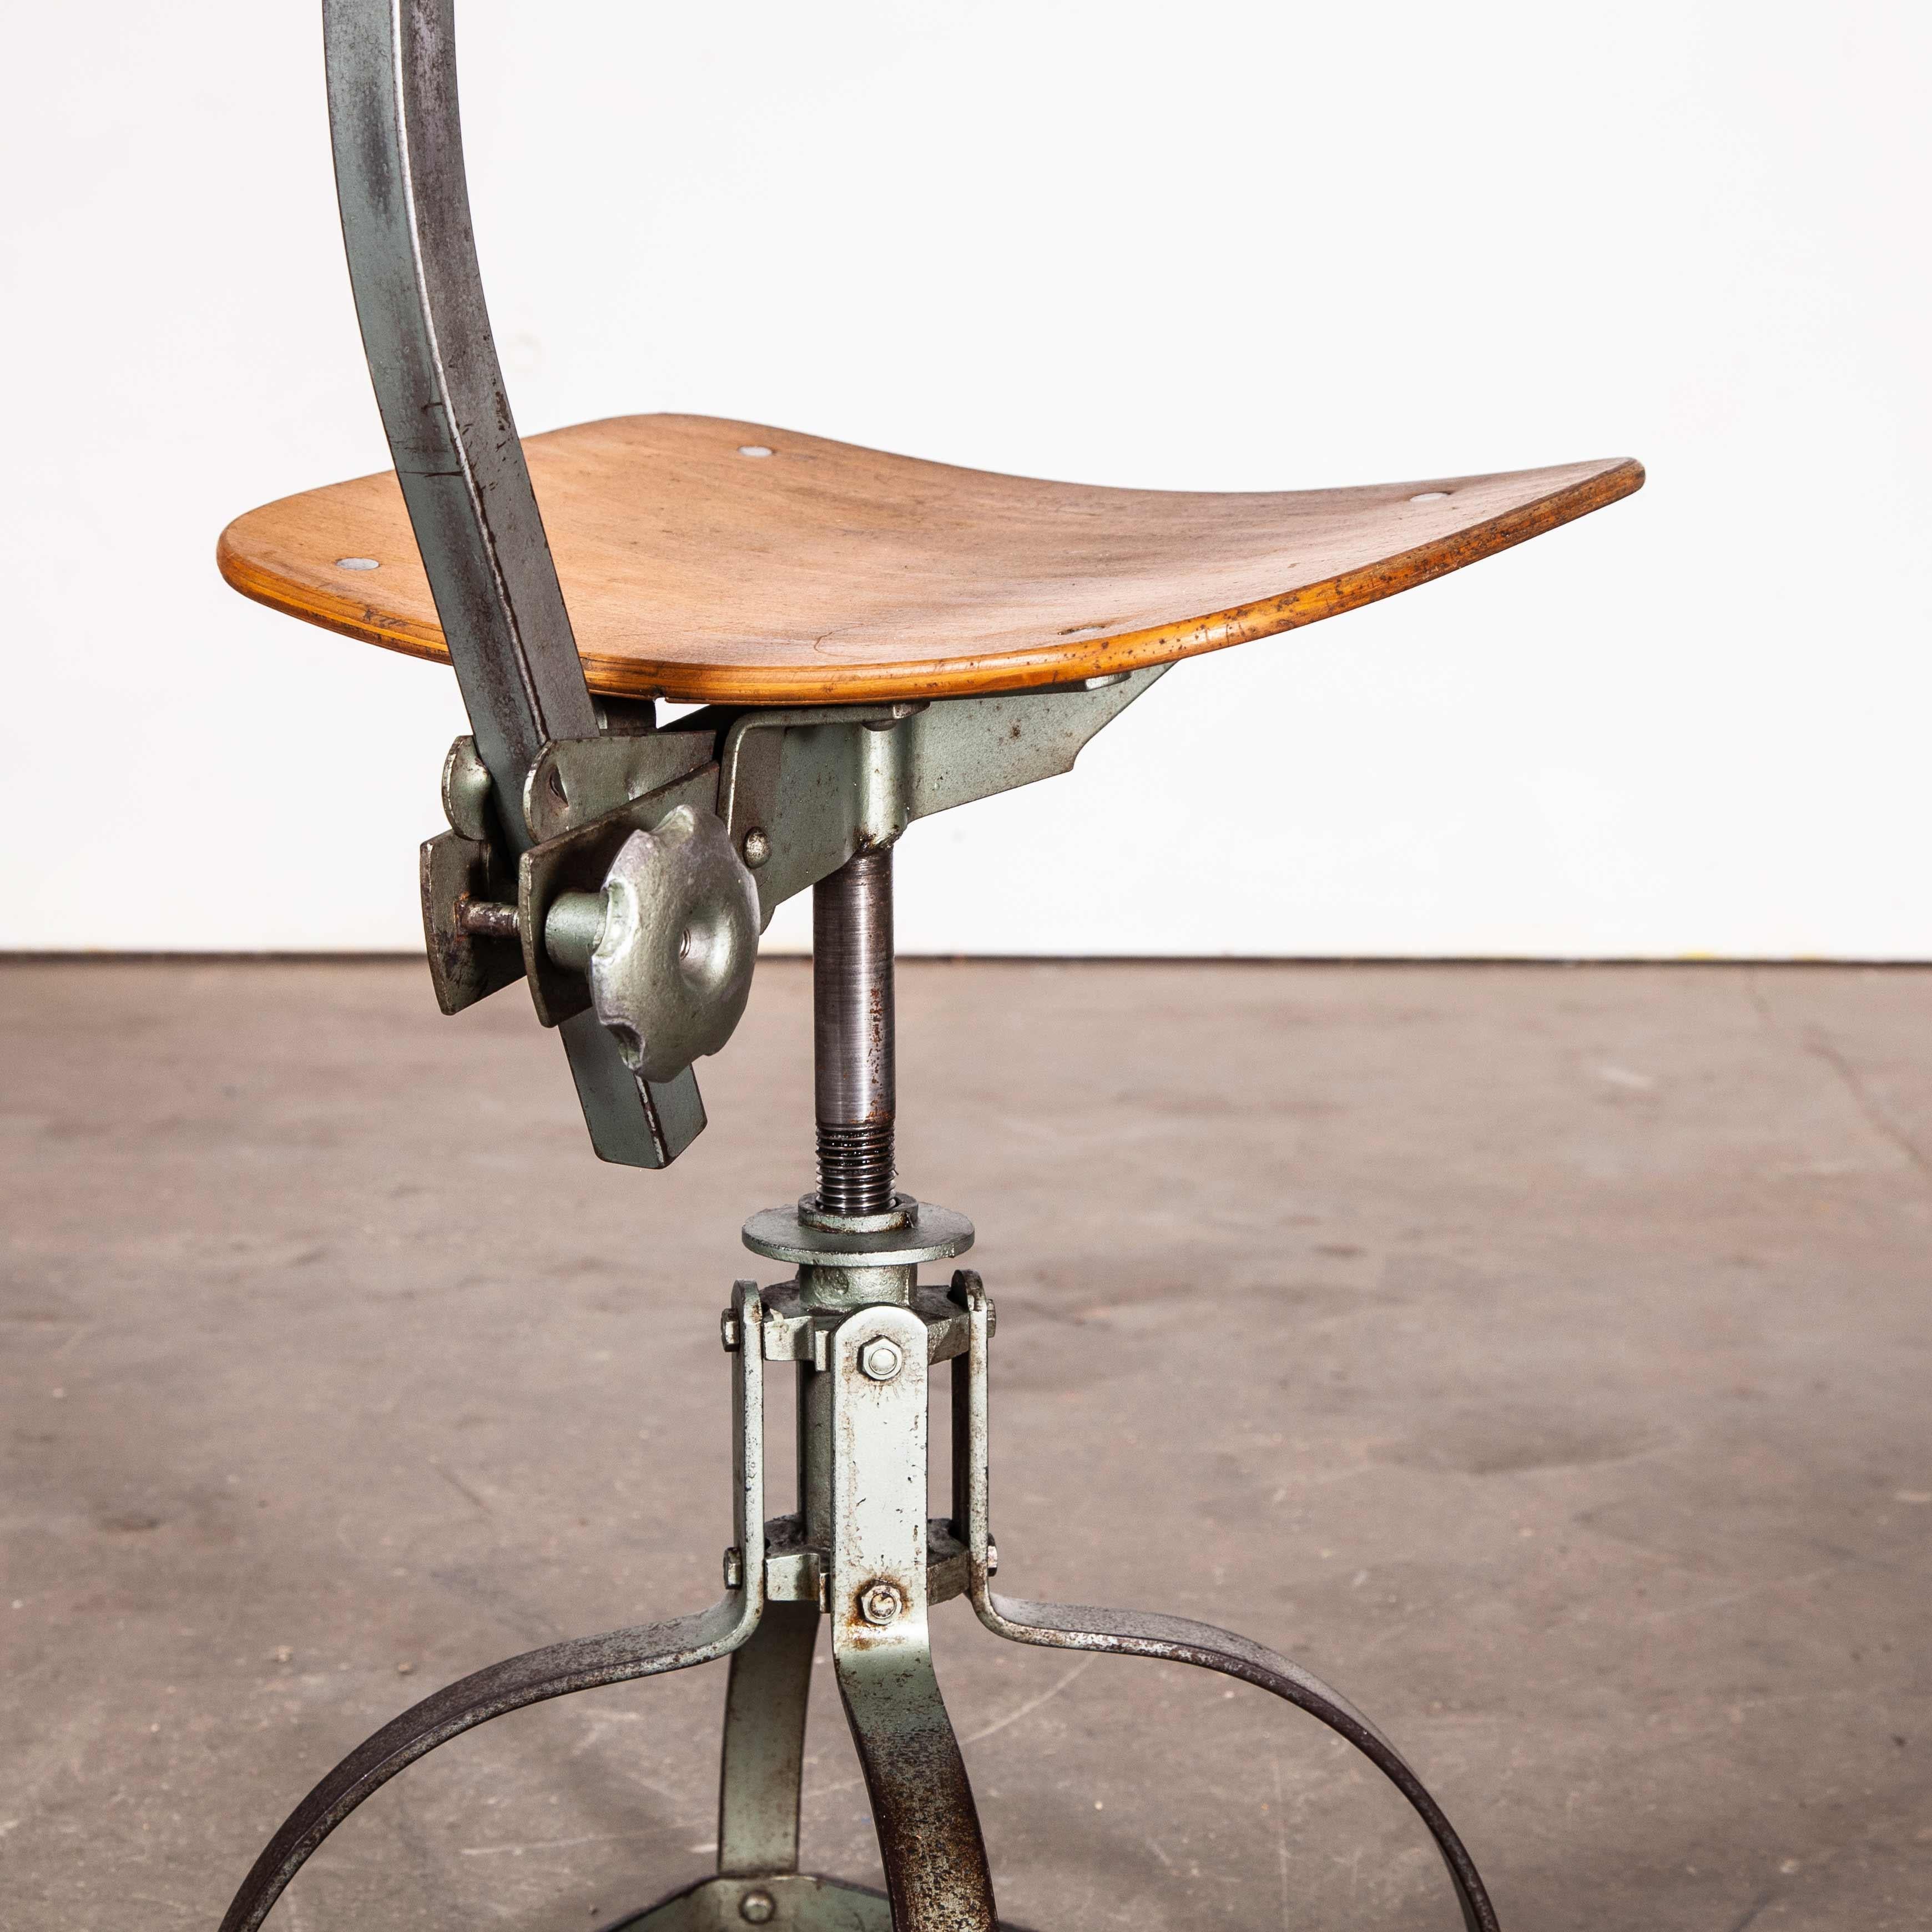 1950er Jahre original französischer Bienaise Werkstatt-Drehstuhl - Niedriger Schreibtischstuhl - Metallgestell
originaler französischer Bienaise-Drehstuhl aus den 1950er Jahren - Metallgestell. Der klassische französische Industriestuhl, entworfen